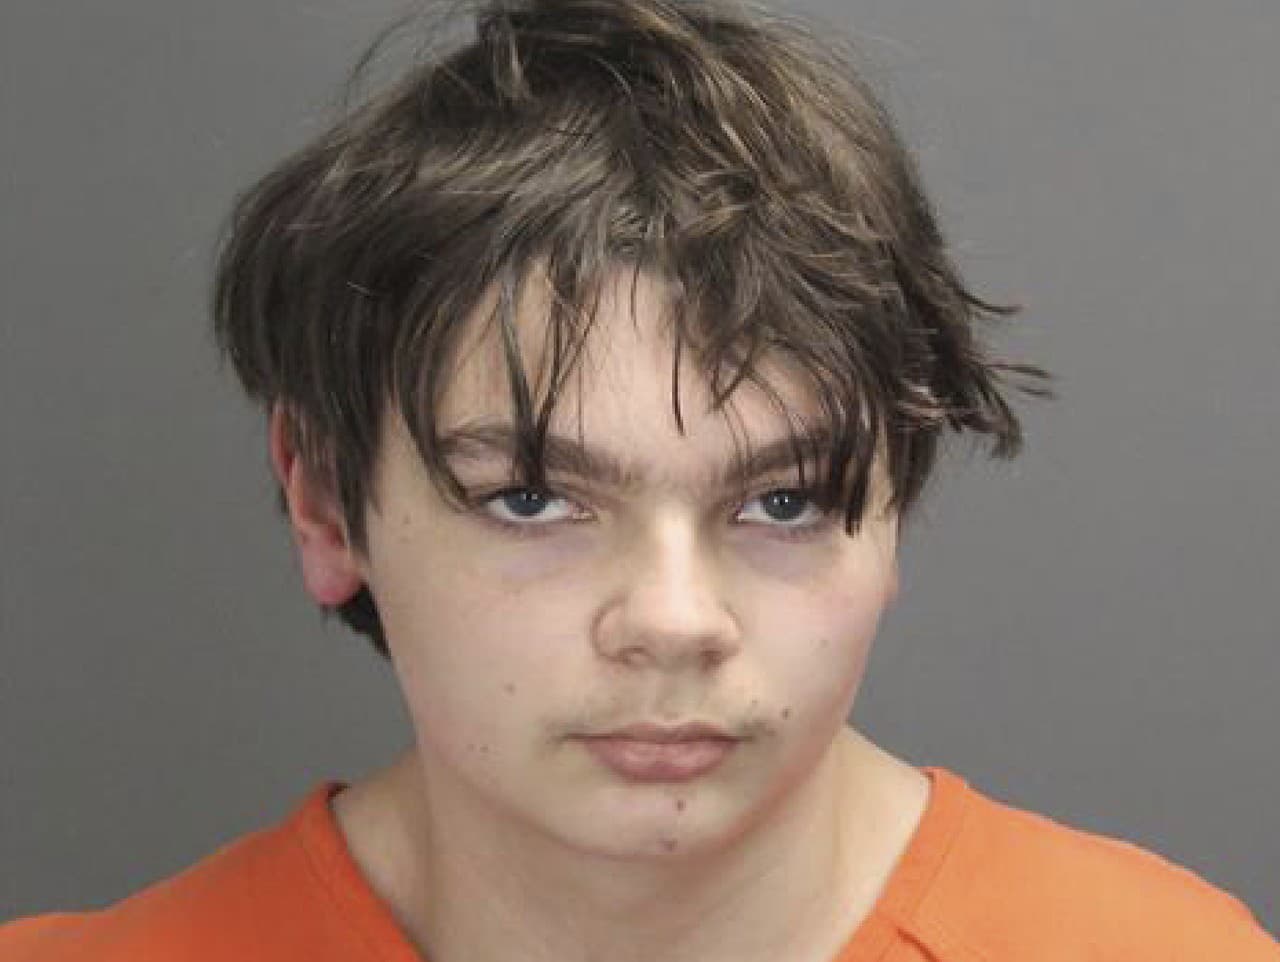 Maloletý Ethan Crumbley, ktorý zastrelil niekoľko ľudí na škole